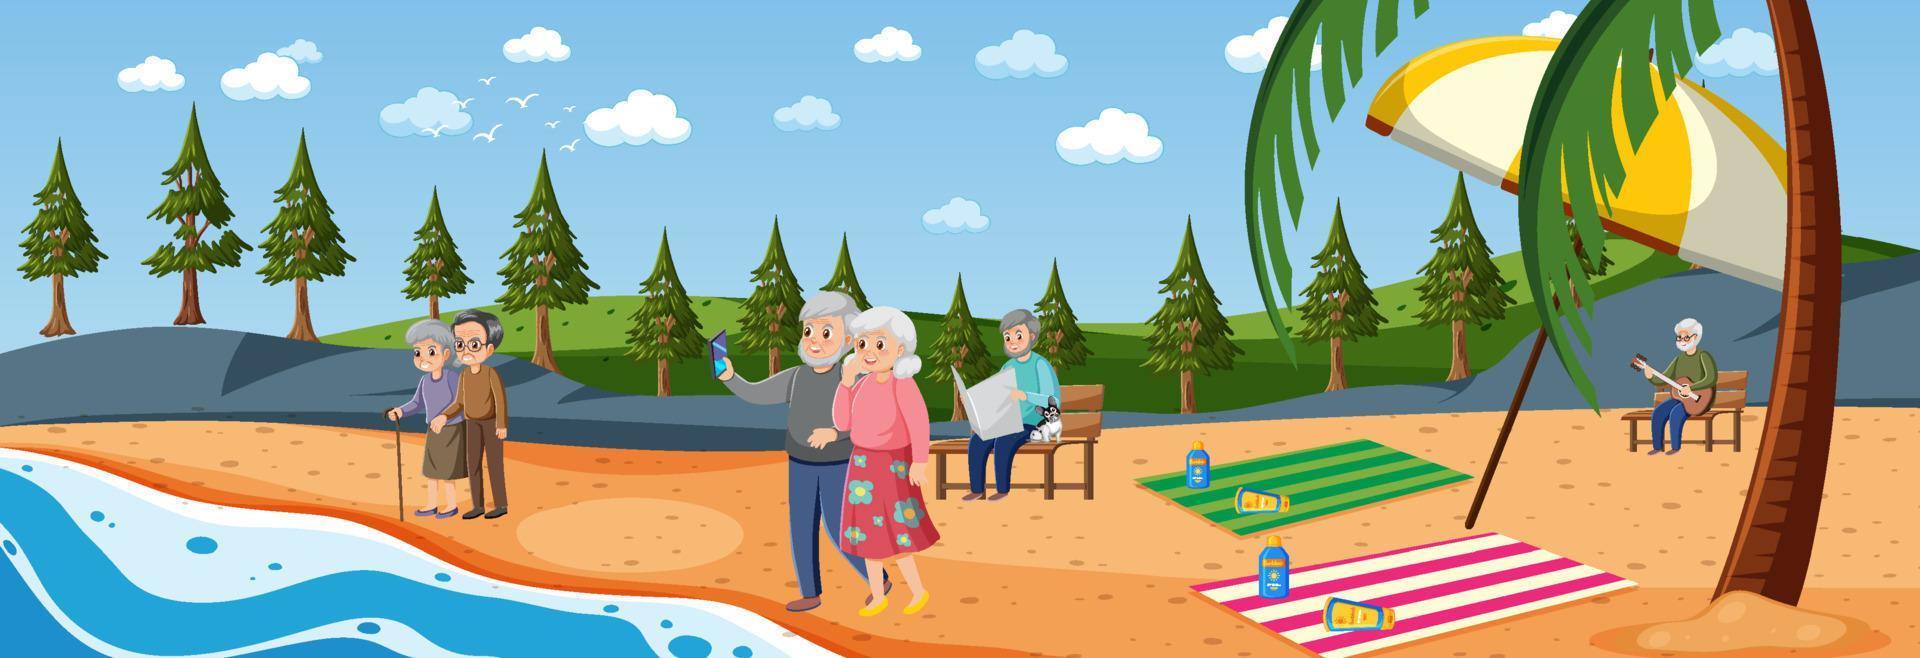 cena de praia com idosos de férias vetor